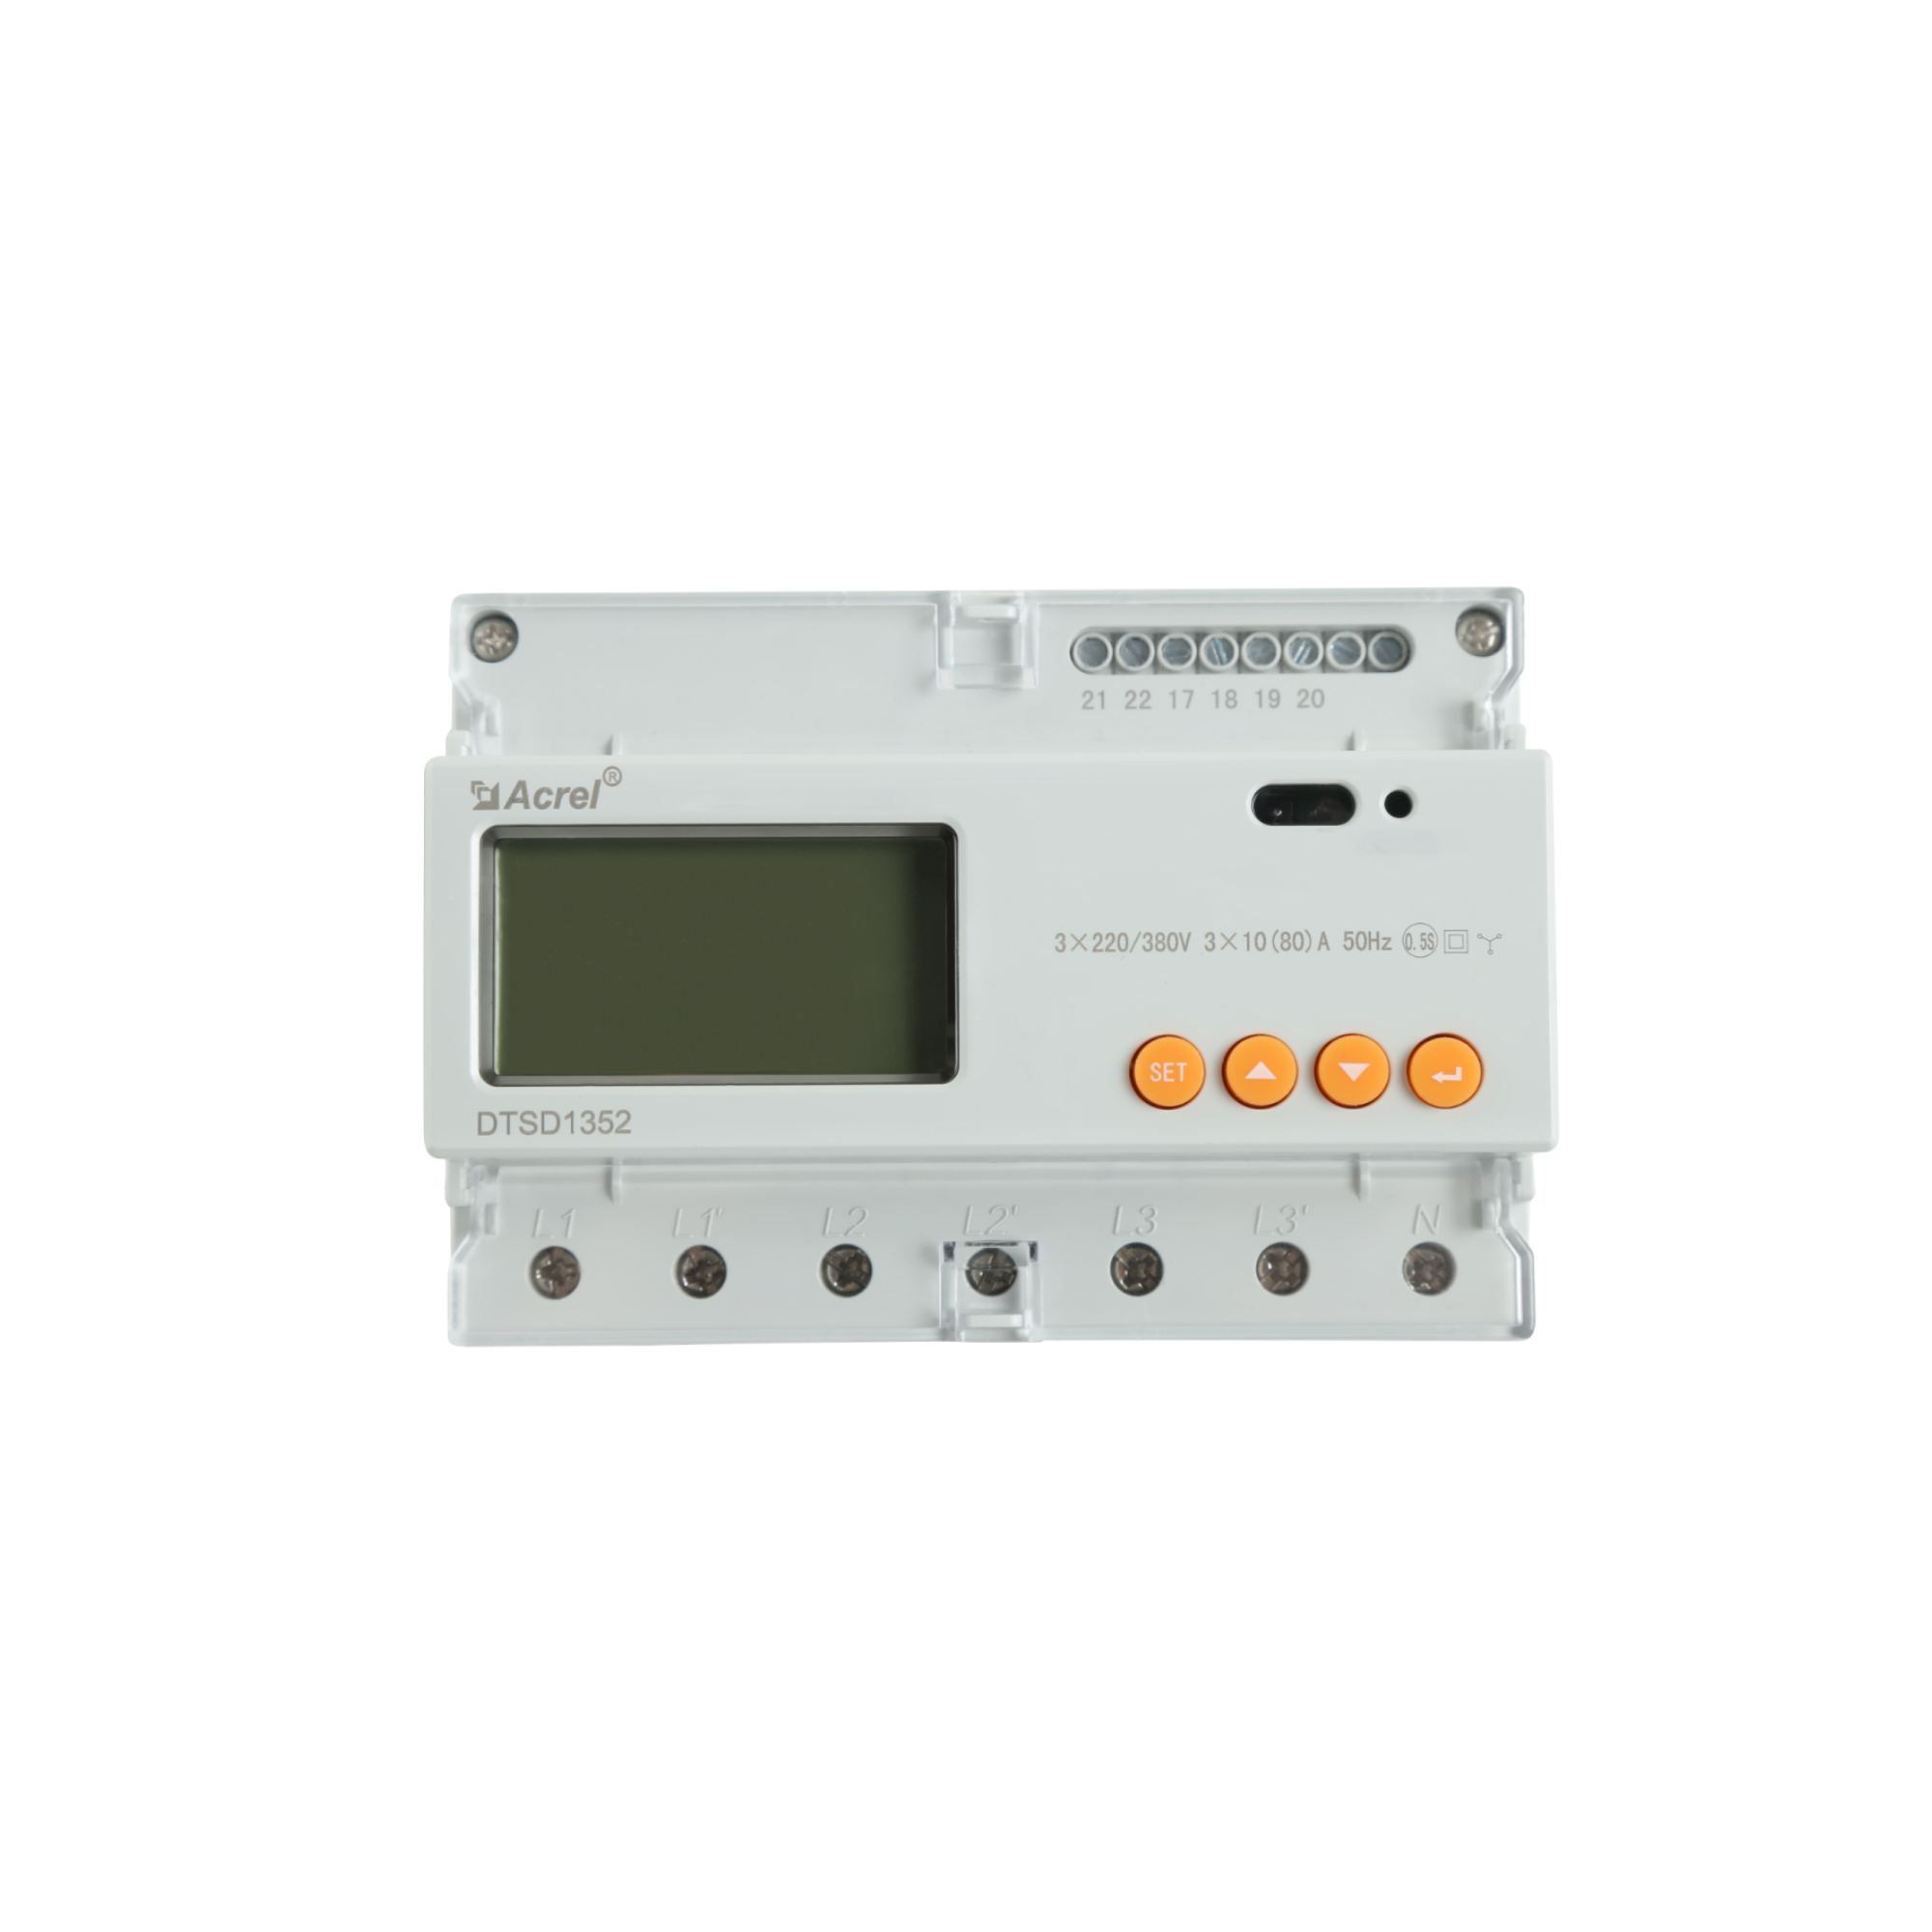 Sungrow DTSD1352 (80A) smart meter